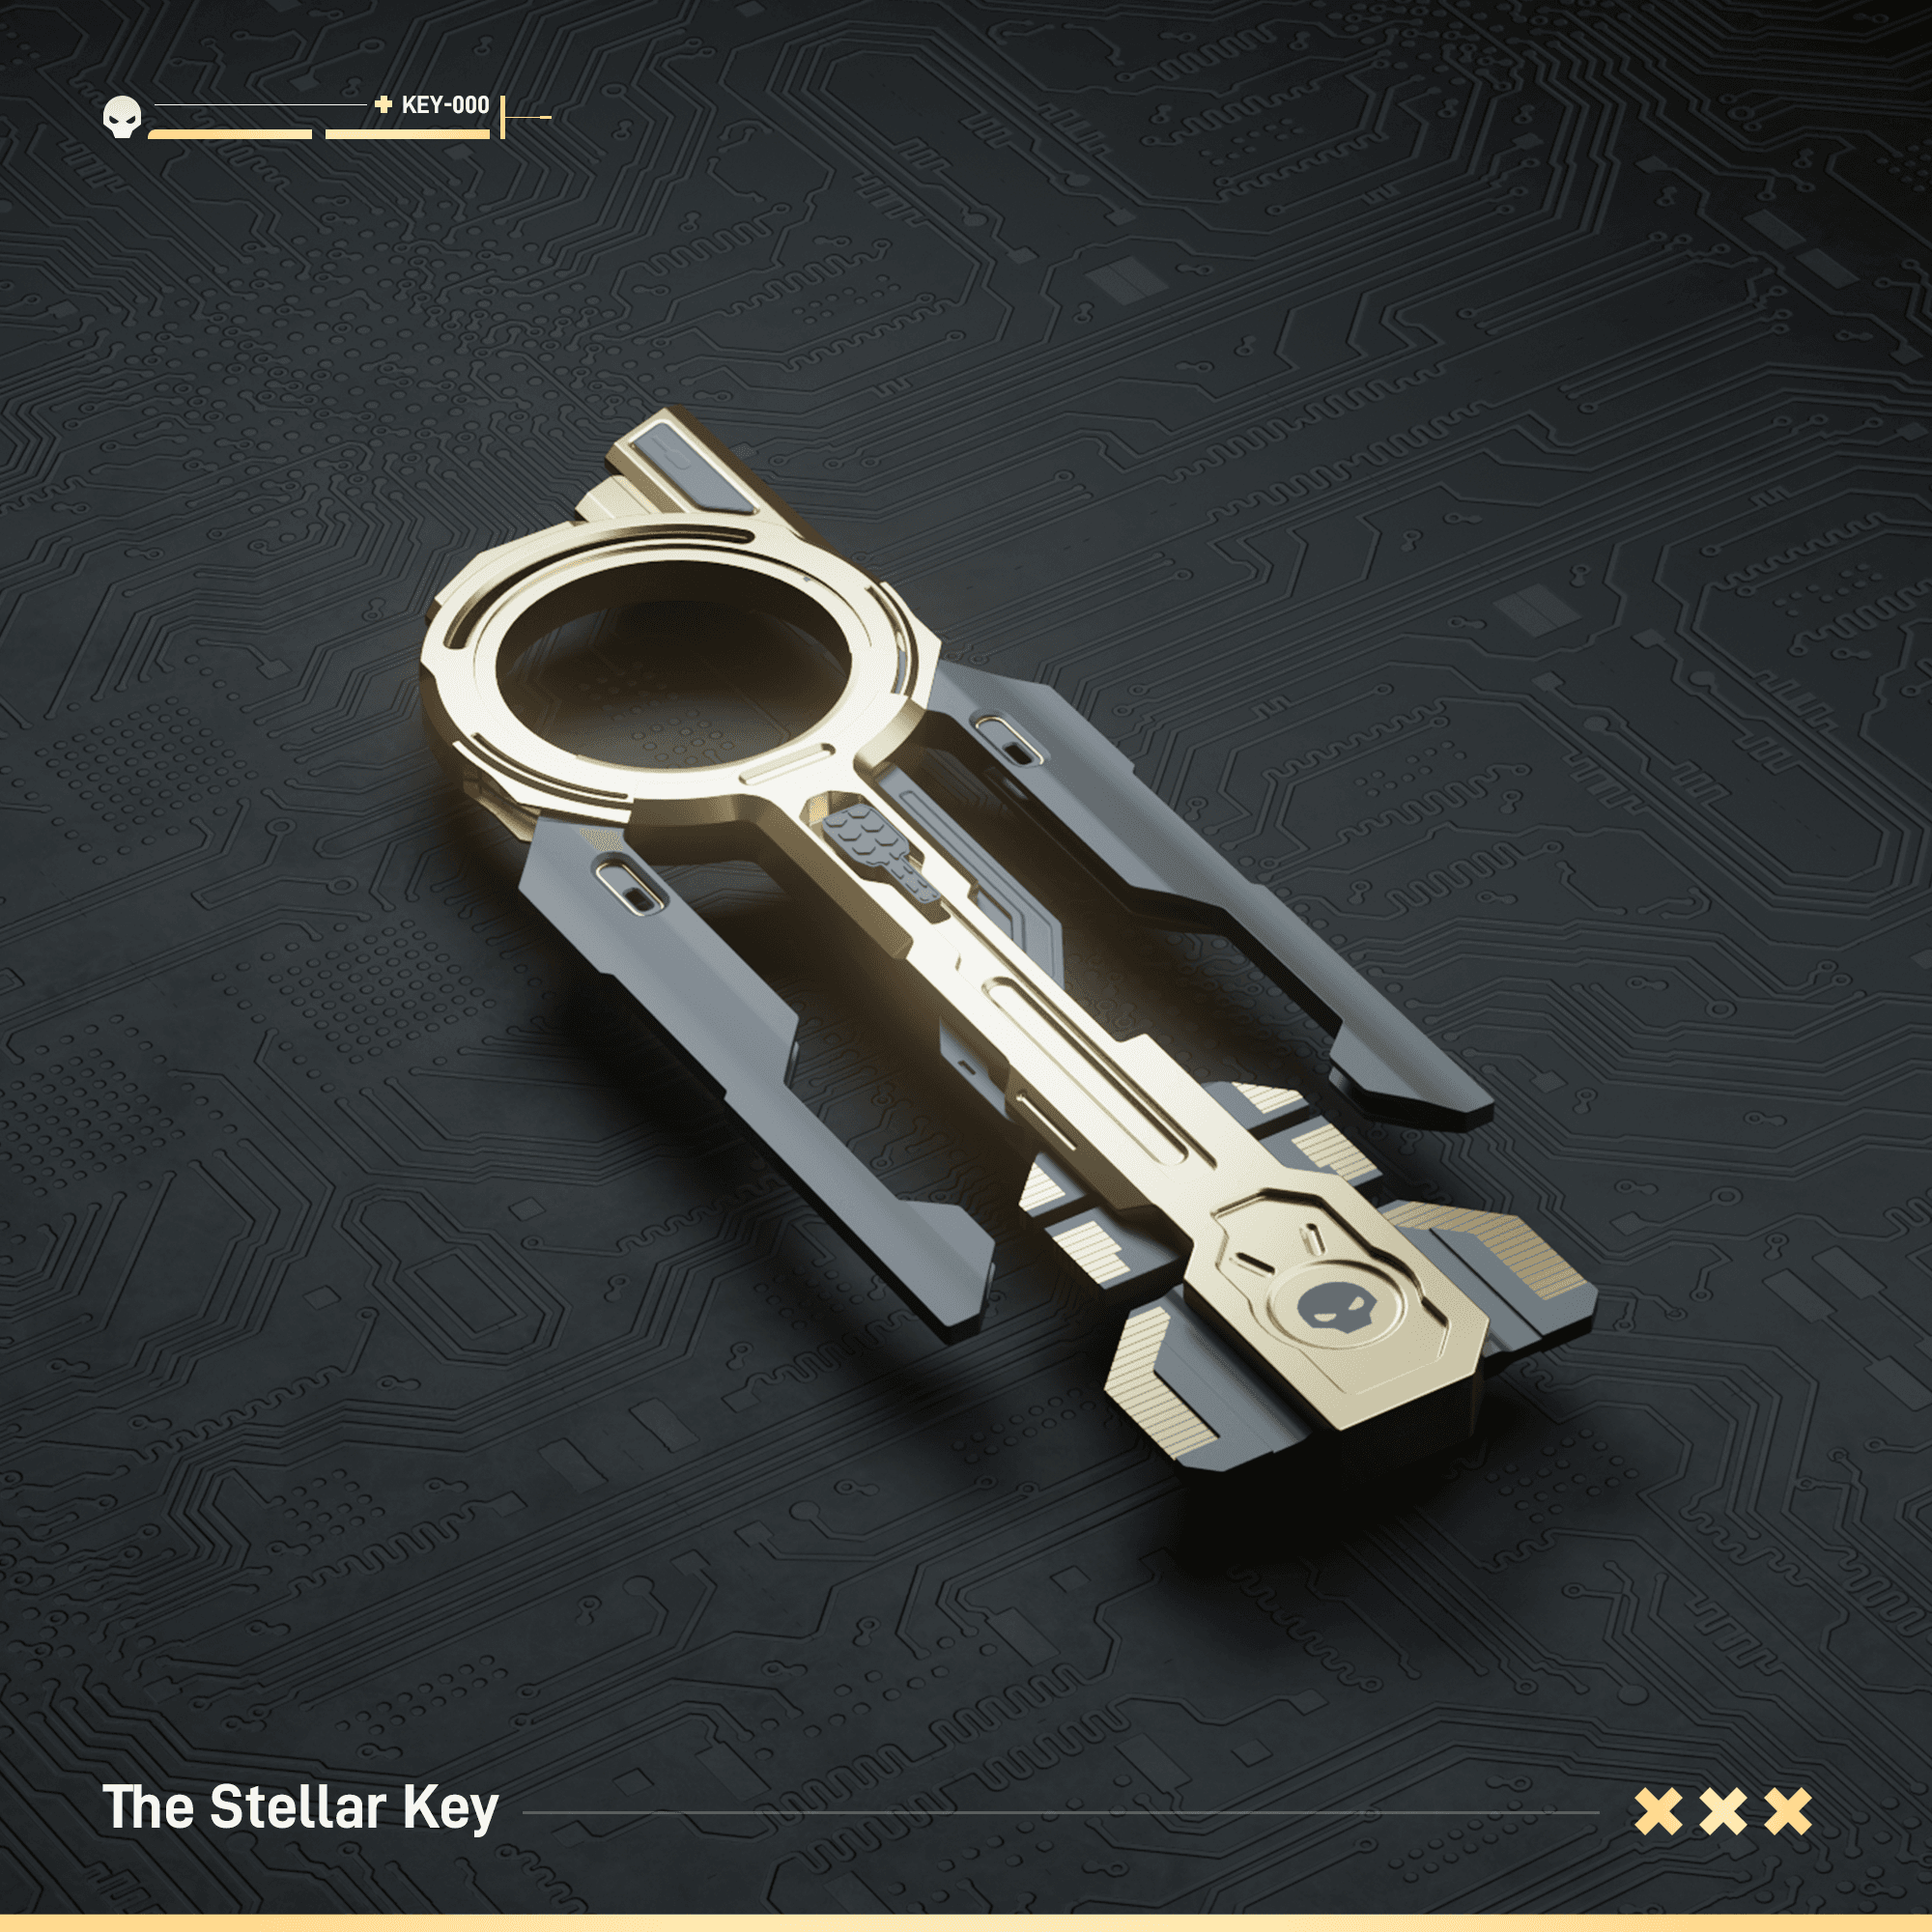 The Stellar Key